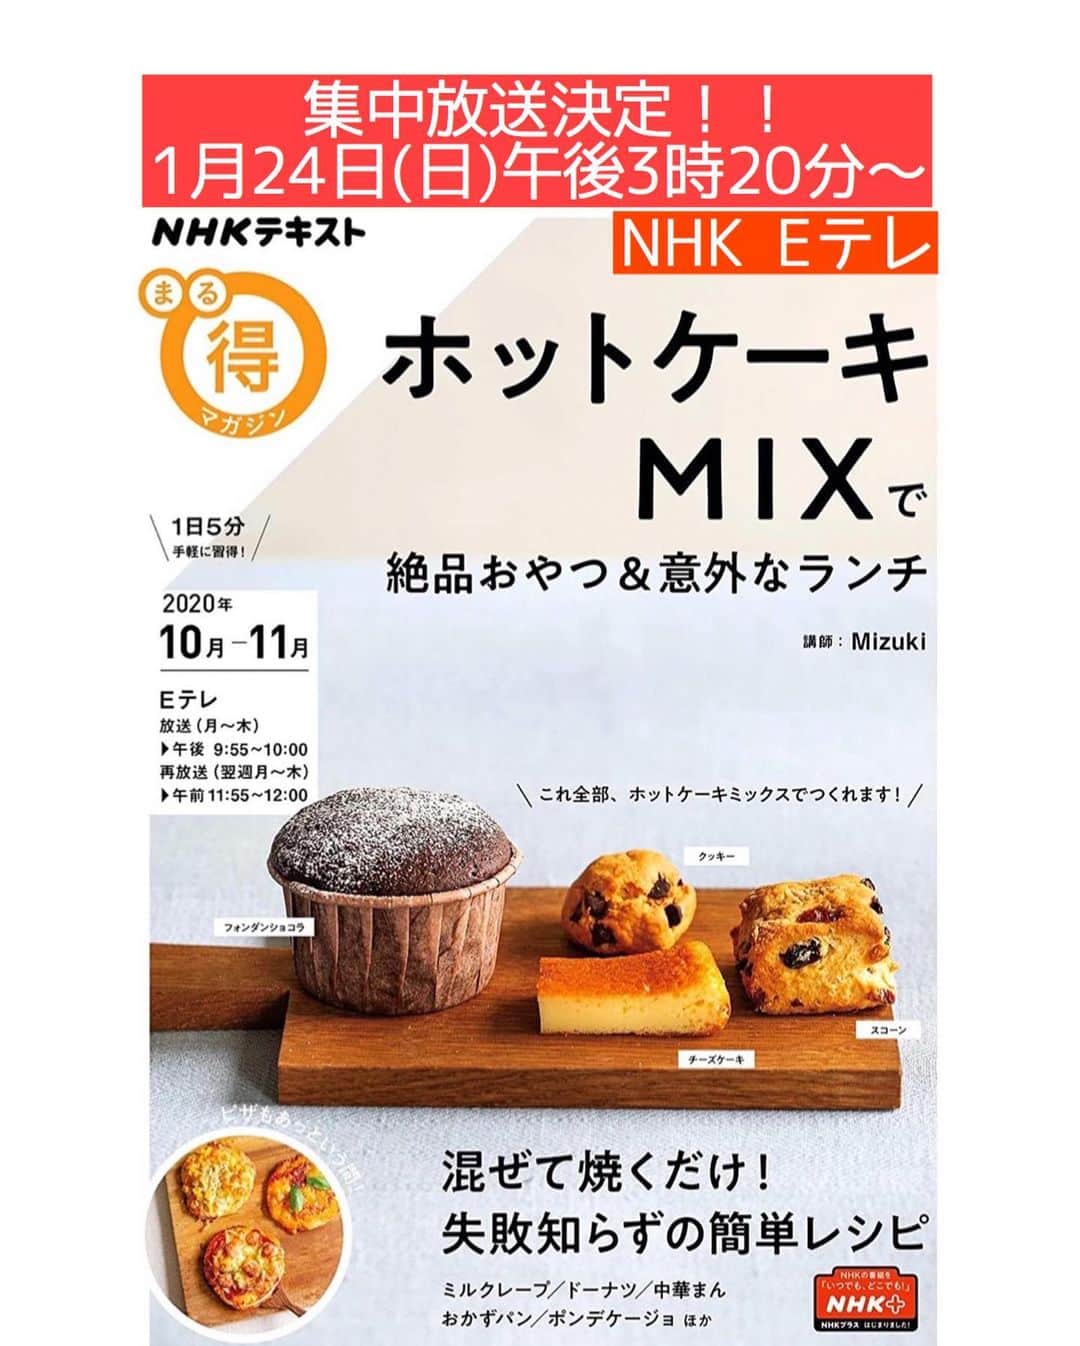 Mizuki【料理ブロガー・簡単レシピ】さんのインスタグラム写真 - (Mizuki【料理ブロガー・簡単レシピ】Instagram)「・﻿ 【#レシピ 】ーーーーーーーーーー﻿ 春雨は戻さない！白菜チャプチェ﻿ ーーーーーーーーーーーーーーーー﻿ ﻿ ﻿ ﻿ おはようございます(*^^*)﻿ ﻿ 今日ご紹介させていただくのは﻿ \ 白菜チャプチェ /﻿ 旬の白菜をたっぷり加えて﻿ ボリューム満点に仕上げました♡﻿ ﻿ 春雨は戻さないから超簡単！！﻿ さっと炒めて煮るだけで﻿ あっという間に作れますよ〜♩﻿ ﻿ とってもごはんに合うので﻿ よかったらお試し下さいね(*´艸`)﻿ ﻿ ﻿ ﻿ ＿＿＿＿＿＿＿＿＿＿＿＿＿＿＿＿＿＿＿＿﻿ 【2人分】﻿ 豚バラ薄切り肉...100g﻿ 白菜...1/8個(200g)﻿ 玉ねぎ...1/4個﻿ 人参...1/4本﻿ 春雨...40g﻿ ●水...200ml﻿ ●酒・醤油...各大1.5﻿ ●砂糖・オイスターソース...各大1﻿ ●にんにくチューブ...2cm﻿ ごま油...大1﻿ 塩こしょう...少々﻿ (好みで)白ごま...適量﻿ ﻿ 1.豚肉は3cm長さに切る。白菜は1cm幅に切る。玉ねぎは薄切りにする。人参は細切りにする。﻿ 2.フライパンにごま油を中火で熱して1を炒めて塩こしょうを振る。﻿ 3.豚肉の色が変わったら●と春雨を加え、混ぜながら4分程炒め煮する。仕上げにごまを振る。﻿ ￣￣￣￣￣￣￣￣￣￣￣￣￣￣￣￣￣￣￣￣﻿ ﻿ ﻿ ﻿ 《ポイント》﻿ ♦︎春雨は煮汁に浸かるようにして炒め煮して下さい♩﻿ ♦︎豚こまでも美味しく作れます♩﻿ ﻿ ﻿ ﻿ ﻿ ﻿ ﻿ \\お知らせです//﻿ ﻿ 【🔔まる得マガジン集中放送決定🔔】﻿ ￣￣￣￣￣￣￣￣￣￣￣￣￣￣￣￣￣￣﻿ NHK Eテレで放送された﻿ ''ホットケーキミックスで﻿ 絶品おやつ&意外なランチ''が﻿ テキストと共に大反響をいただいており﻿ 本当にありがとうございます😭‼️﻿ ﻿ それを受けまして﻿ 異例の集中再放送が決定❣️❣️﻿ 放送は《1月24日(日)午後3時20分〜》﻿ 8本分一挙に放送されます✨﻿ ﻿ ホットケーキミックスの魅力を﻿ 存分にお伝えさせていただきますので﻿ お時間が合えばご覧下さいませ☺️﻿ ガッチガチに緊張している私を﻿ どうぞ笑ってやって下さい(笑)﻿ (内心めっちゃ恥ずかしいです😂)﻿ ﻿ ￣￣￣￣￣￣￣￣￣￣￣￣￣￣￣￣﻿ ﻿ ﻿ ﻿ ﻿ ﻿ ﻿ 📕重版しました！📕﻿ ありがとうございます😭﻿ 【ラクしておいしい！#1品晩ごはん 】﻿ ￣￣￣￣￣￣￣￣￣￣￣￣￣￣￣￣￣﻿ 私たちだってヘトヘトな日がある•••﻿ 毎日何品も作っていられない•••﻿ もうごはんに悩みたくない😢﻿ そんな時、1品ごはんはいかがでしょう？﻿ というご提案です✨﻿ ﻿ 【1品ごはん】は﻿ 副菜いらずで全てがシンプル！﻿ ￣￣￣￣￣￣￣￣￣￣￣￣￣￣￣￣￣￣﻿ 一品つくるだけでいいから﻿ 献立を考えなくてよし！﻿ ￣￣￣￣￣￣￣￣￣￣￣￣￣￣￣￣￣￣﻿ 悩まない、疲れない、﻿ 気力や時間がなくてもなんとかなる！﻿ ￣￣￣￣￣￣￣￣￣￣￣￣￣￣￣￣￣￣﻿ そんな頼りになる﻿ 便利なお助けごはんです☺️💕﻿ (ハイライトに🔗貼っています✨)﻿ ￣￣￣￣￣￣￣￣￣￣￣￣￣￣￣￣￣﻿ ﻿ ﻿ ﻿ ﻿ ﻿ ⭐️発売中⭐️﻿ ＿＿＿＿＿＿＿＿＿＿＿＿＿＿＿＿＿＿﻿ しんどくない献立、考えました♩﻿ \15分でいただきます/﻿ 📕Mizukiの2品献立 📕﻿ ﻿ 和食をもっとカジュアルに♩﻿ \毎日のごはんがラクになる/﻿ 📘#Mizukiの今どき和食 📘﻿ ﻿ ホケミレシピの決定版♩﻿ \はじめてでも失敗しない/﻿ 📙ホットケーキミックスのお菓子 📙﻿ ﻿ NHKまる得マガジンテキスト☆﻿ ホットケーキミックスで﻿ 📗絶品おやつ&意外なランチ📗﻿ ￣￣￣￣￣￣￣￣￣￣￣￣￣￣￣￣￣￣﻿ ﻿ ﻿ ﻿ ＿＿＿＿＿＿＿＿＿＿＿＿＿＿＿＿＿＿﻿ レシピを作って下さった際や﻿ レシピ本についてのご投稿には﻿ タグ付け( @mizuki_31cafe )して﻿ お知らせいただけると嬉しいです😊💕﻿ ￣￣￣￣￣￣￣￣￣￣￣￣￣￣￣￣￣￣﻿ ﻿ ﻿ ﻿ ﻿ #白菜#チャプチェ#春雨#豚肉#フライパン#Mizuki#簡単レシピ#時短レシピ#節約レシピ#料理#フーディーテーブル#マカロニメイト#おうちごはん#デリスタグラマー#料理好きな人と繋がりたい#おうちごはんlover#写真好きな人と繋がりたい#foodpic#cooking#recipe#lin_stagrammer#foodporn#yummy#f52grams#白菜チャプチェm」1月23日 8時44分 - mizuki_31cafe